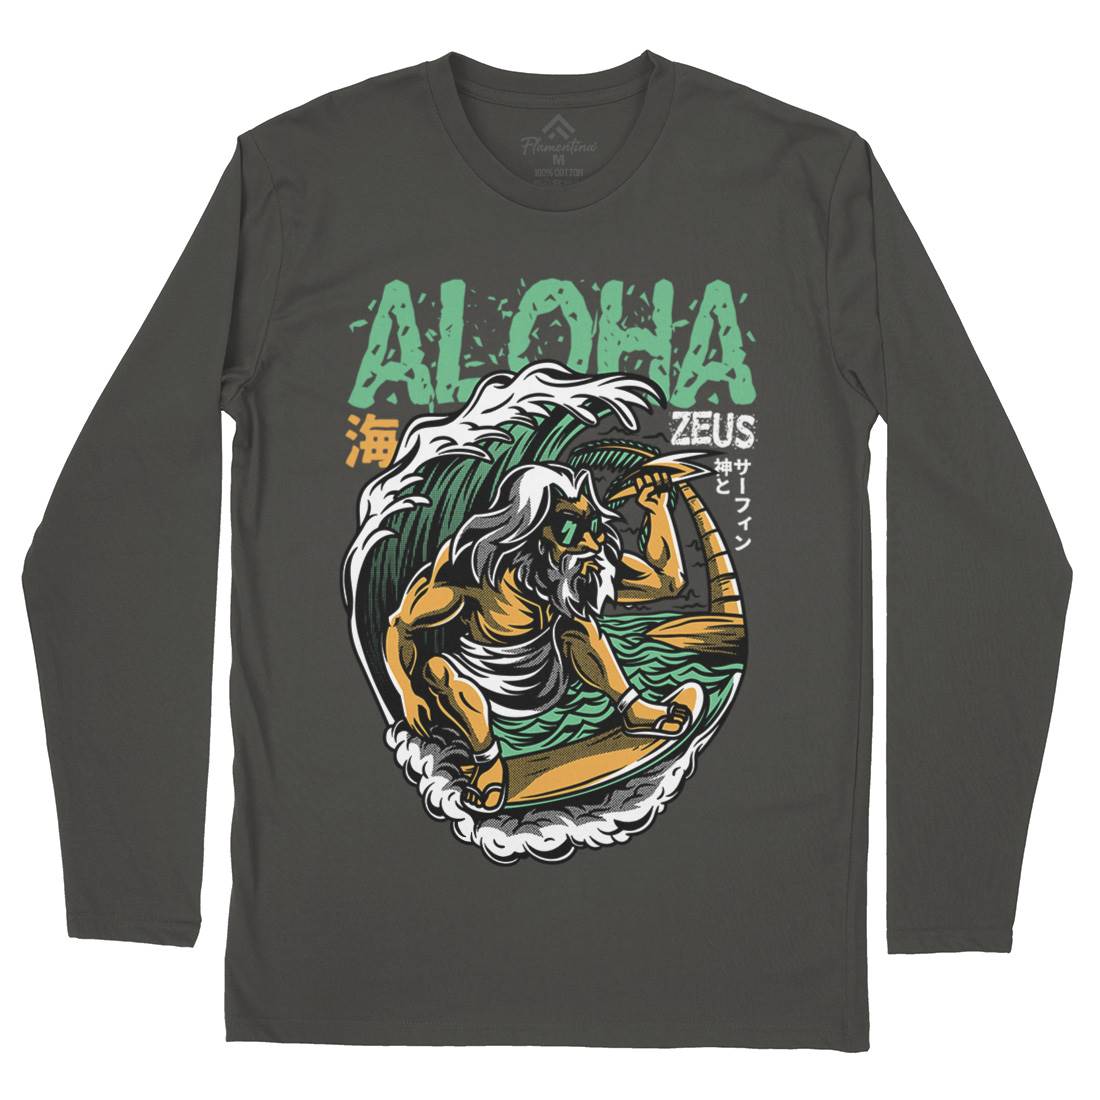 Aloha Zeus Mens Long Sleeve T-Shirt Surf D703